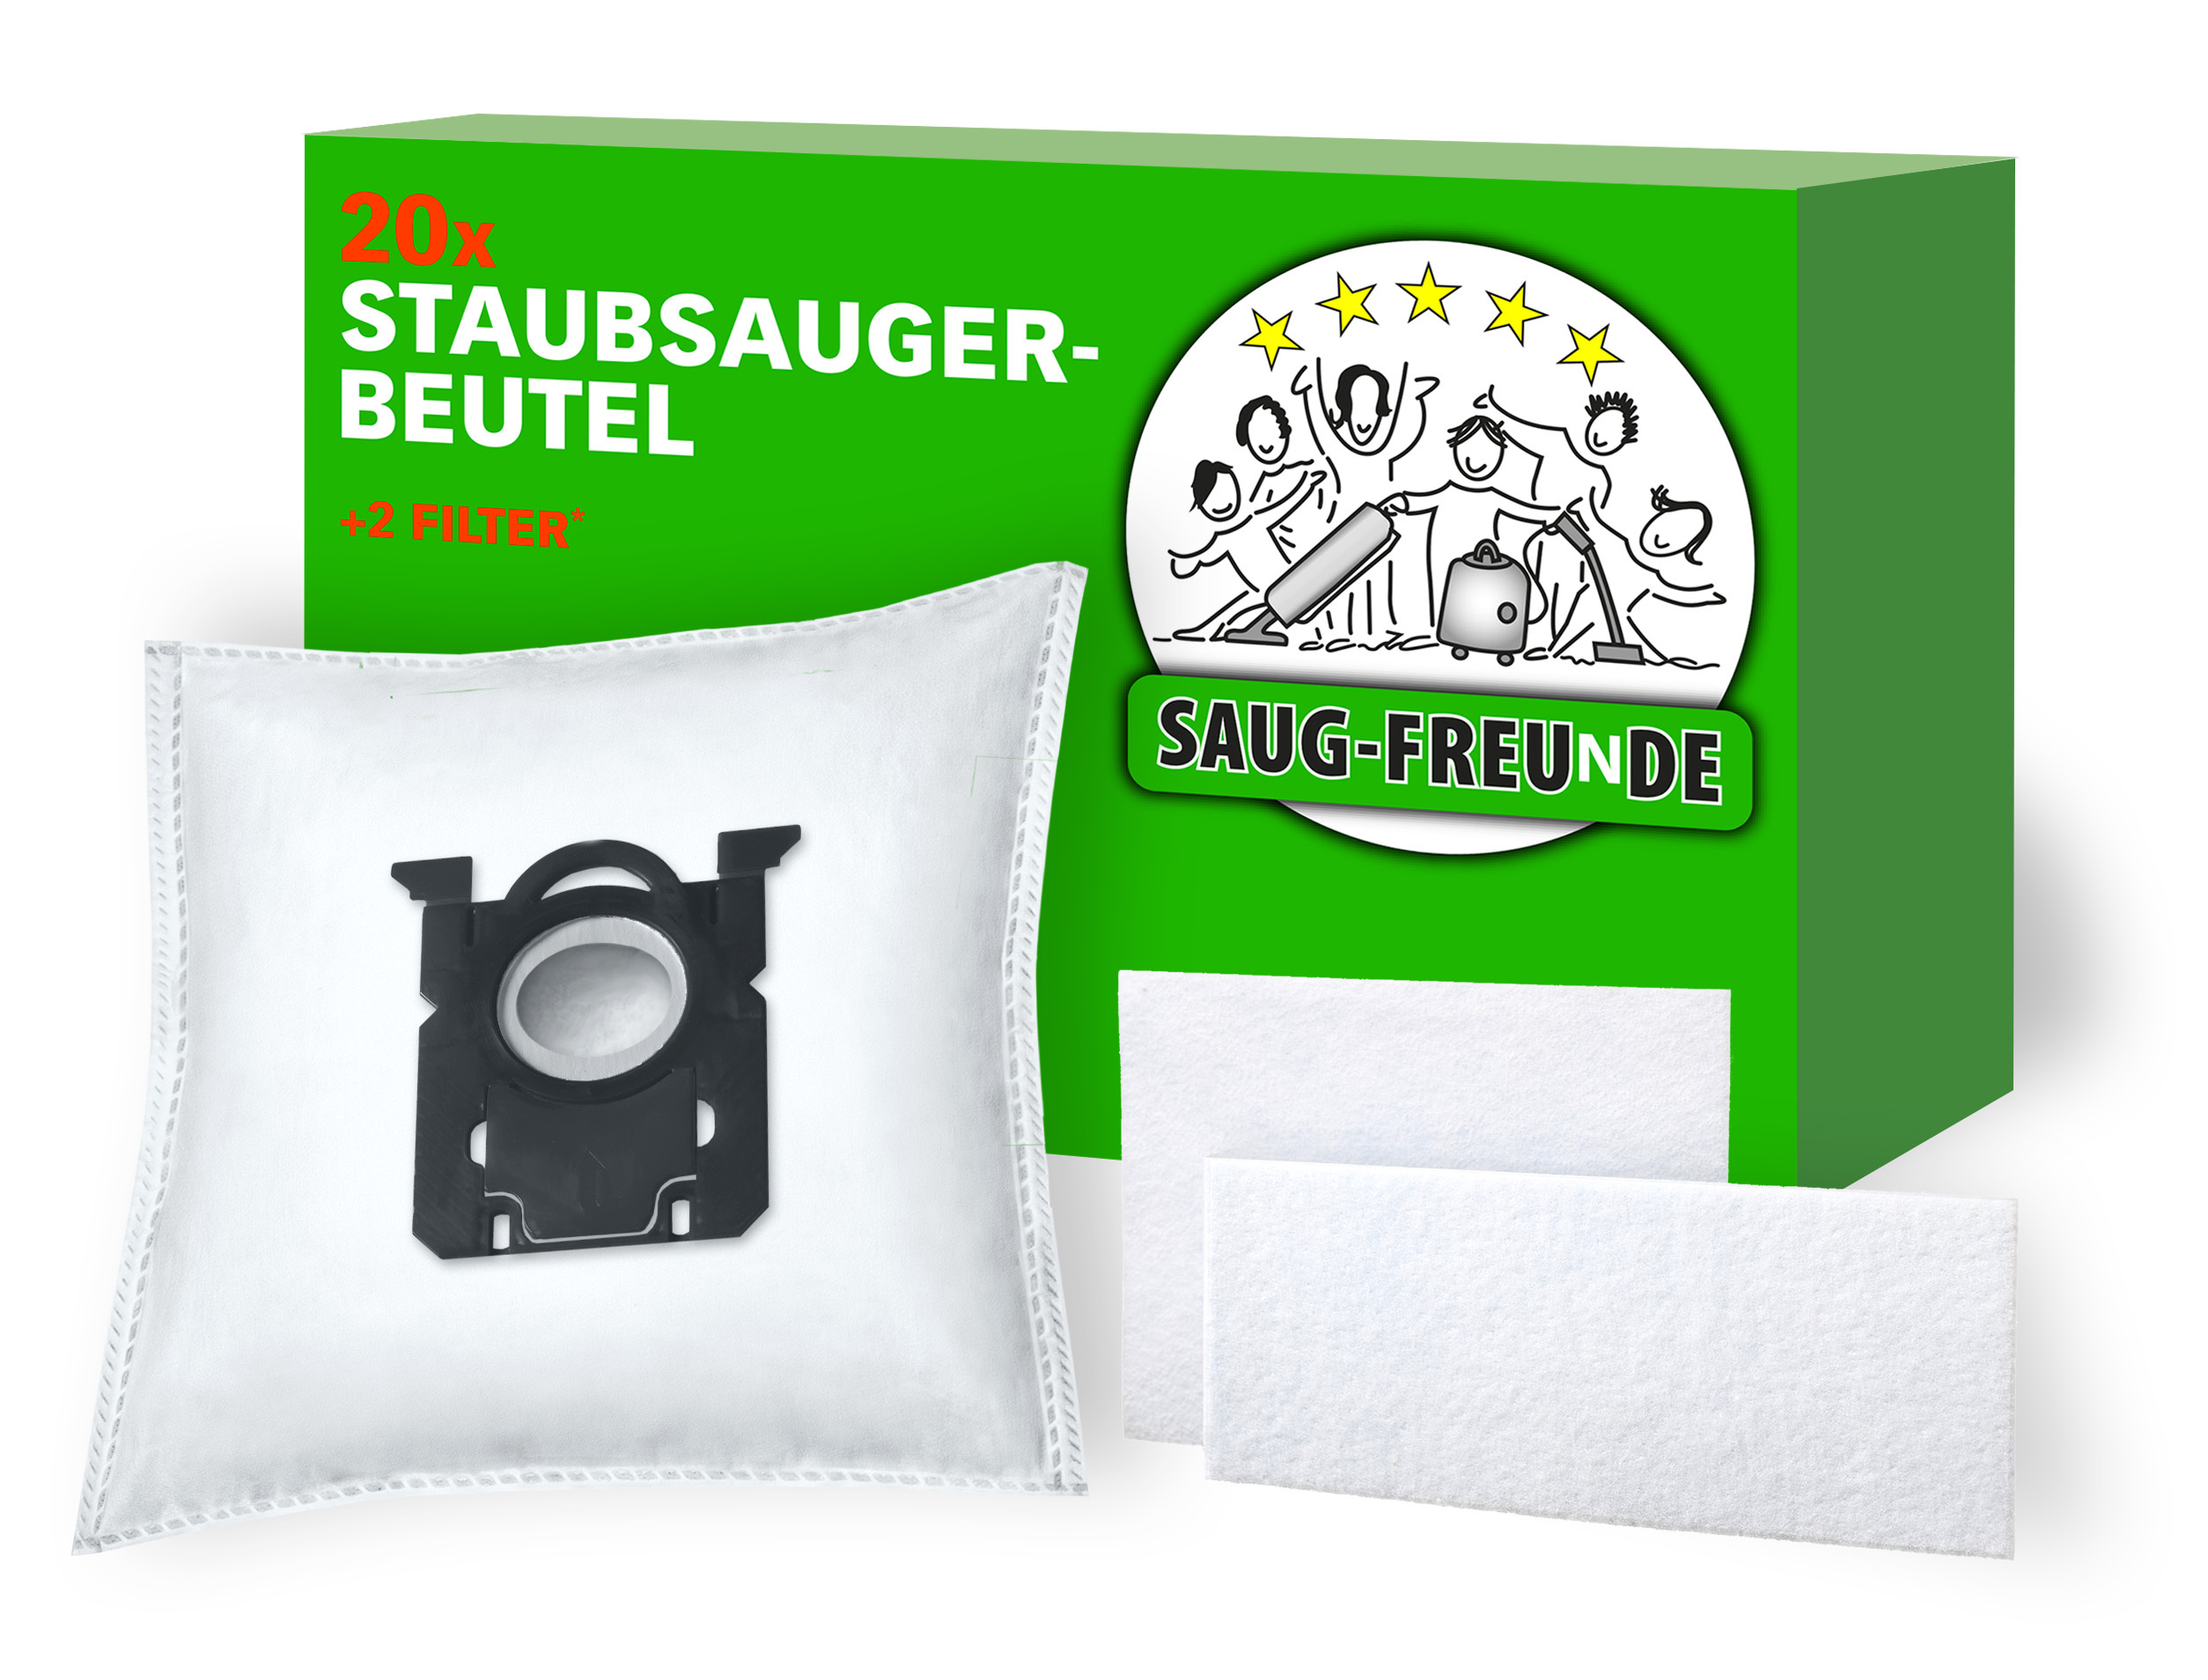 Staubsauger-Beutel SAUG-FREUNDE 10x